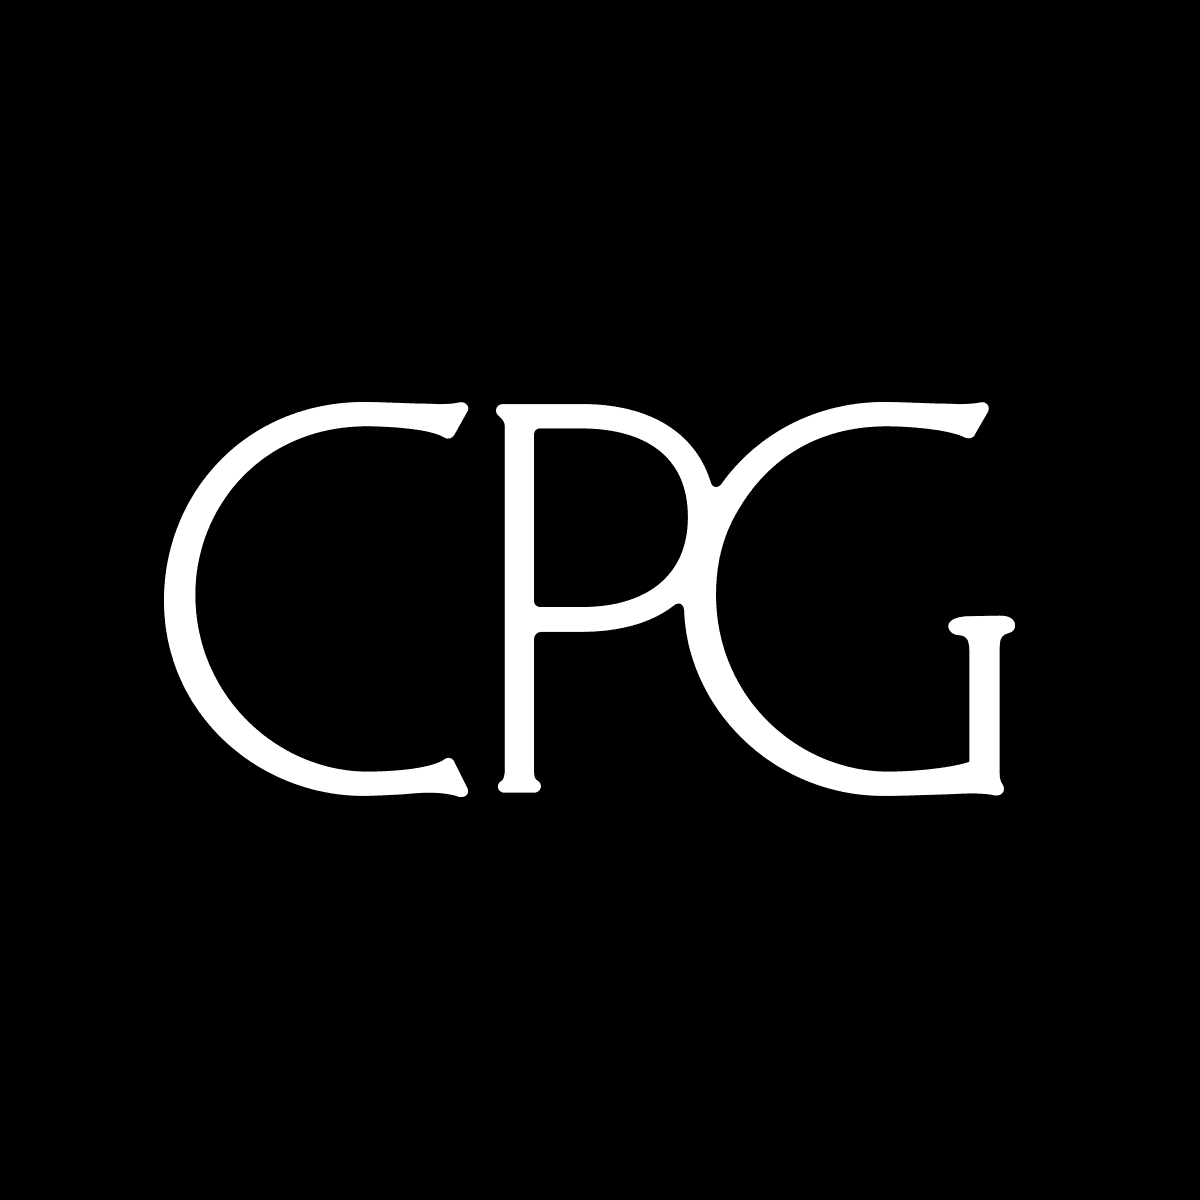 CPG-Genesis